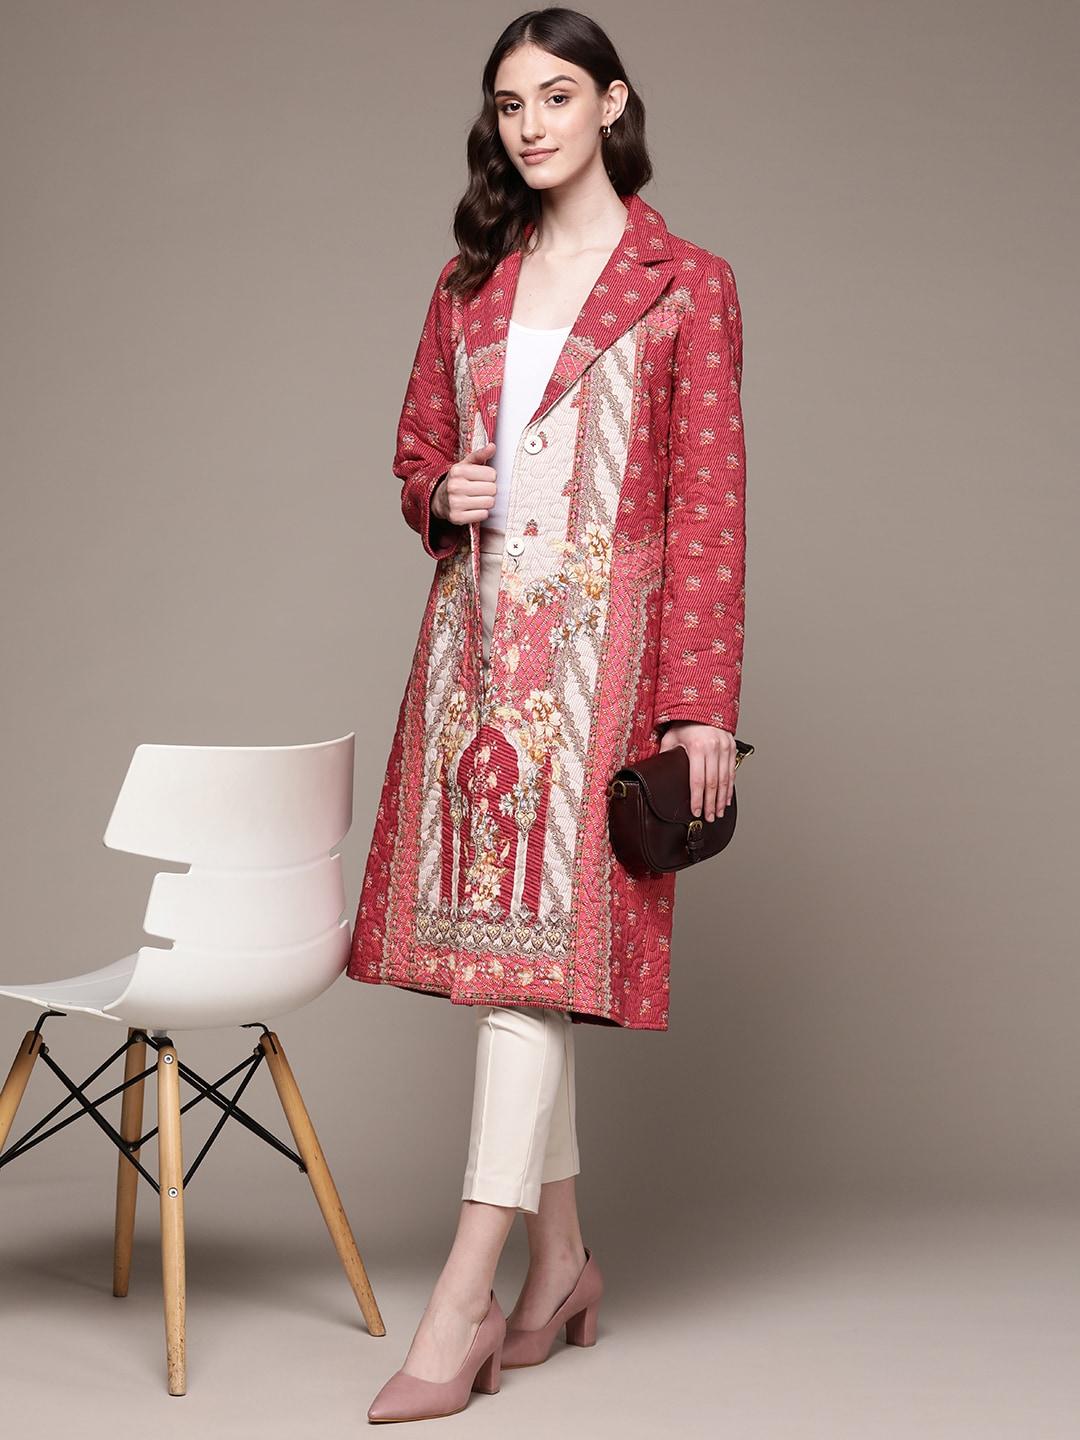 aarke ritu kumar women maroon paisley printed coat